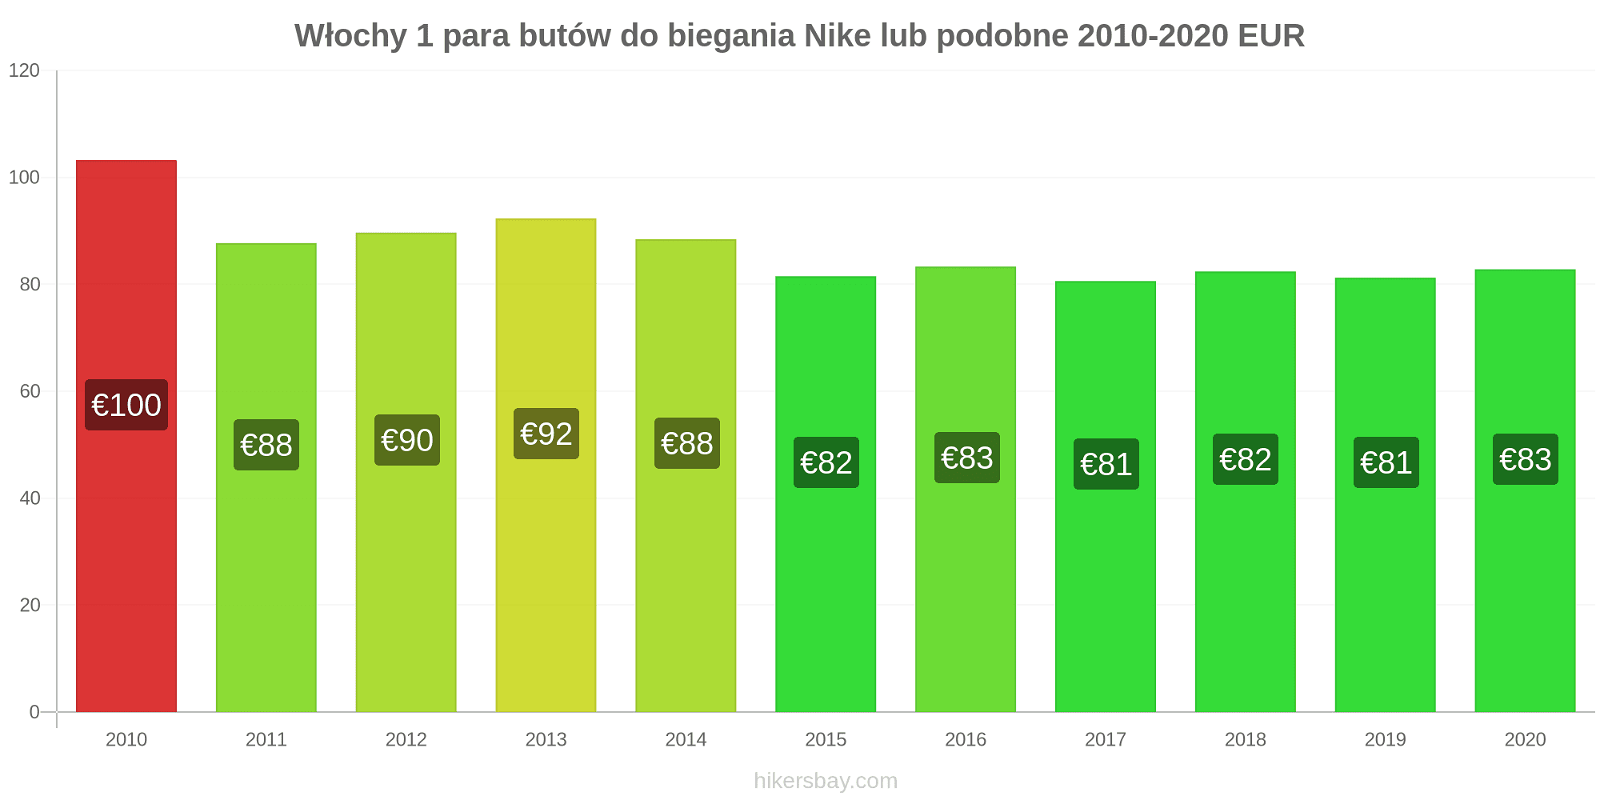 Włochy zmiany cen 1 para butów do biegania Nike lub podobne hikersbay.com